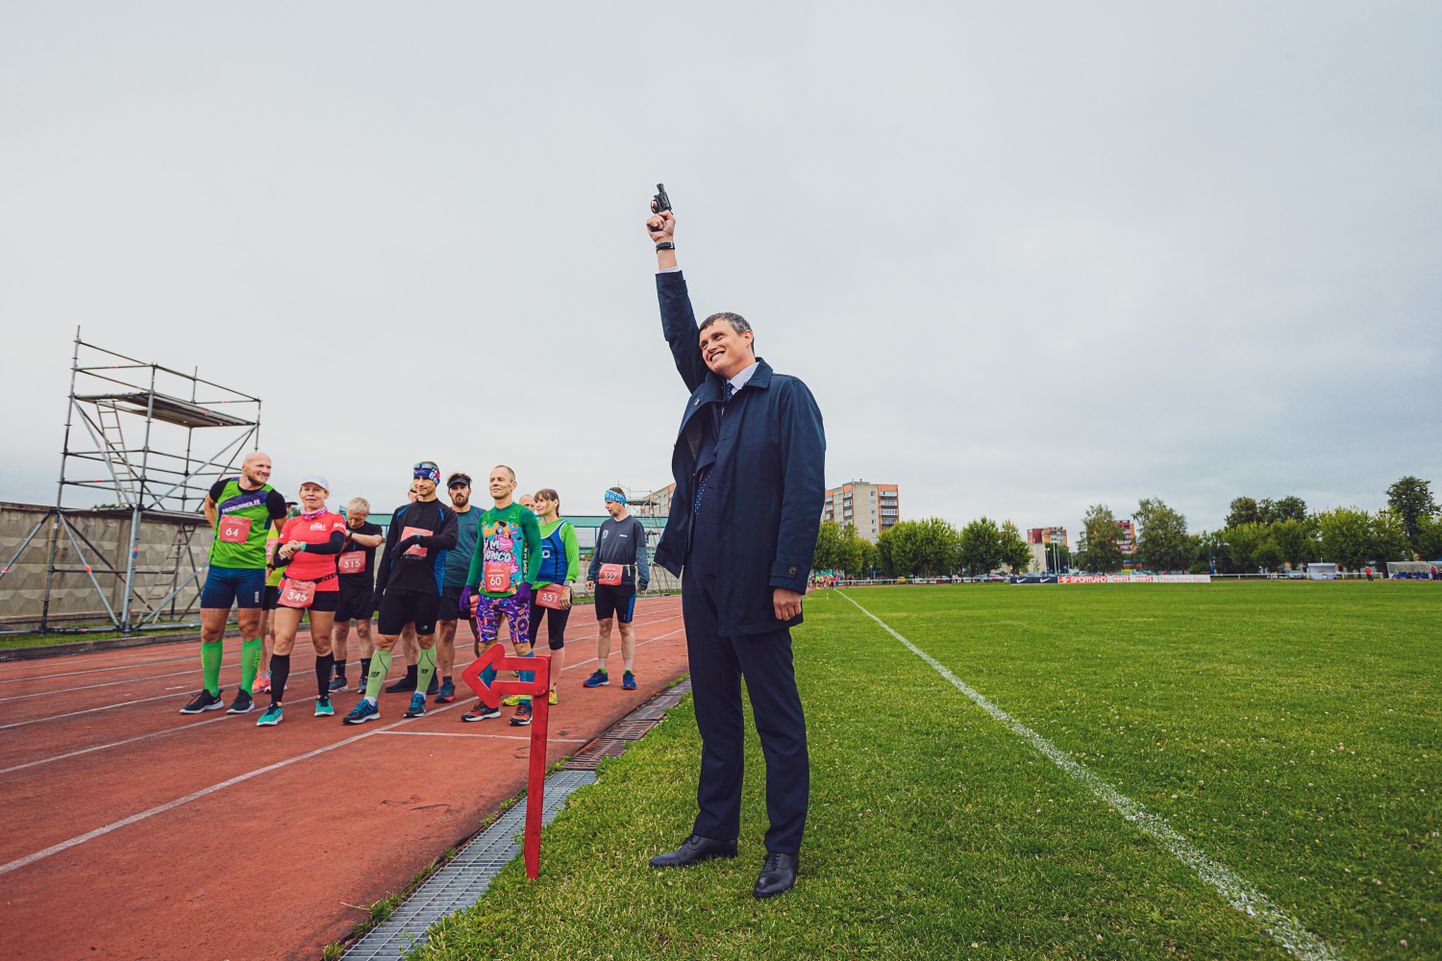 Мэр Нарвы Алексей Евграфов дает старт участникам Ида-Вирумааского стадионного марафона прошлым летом на Кренгольмском стадионе.